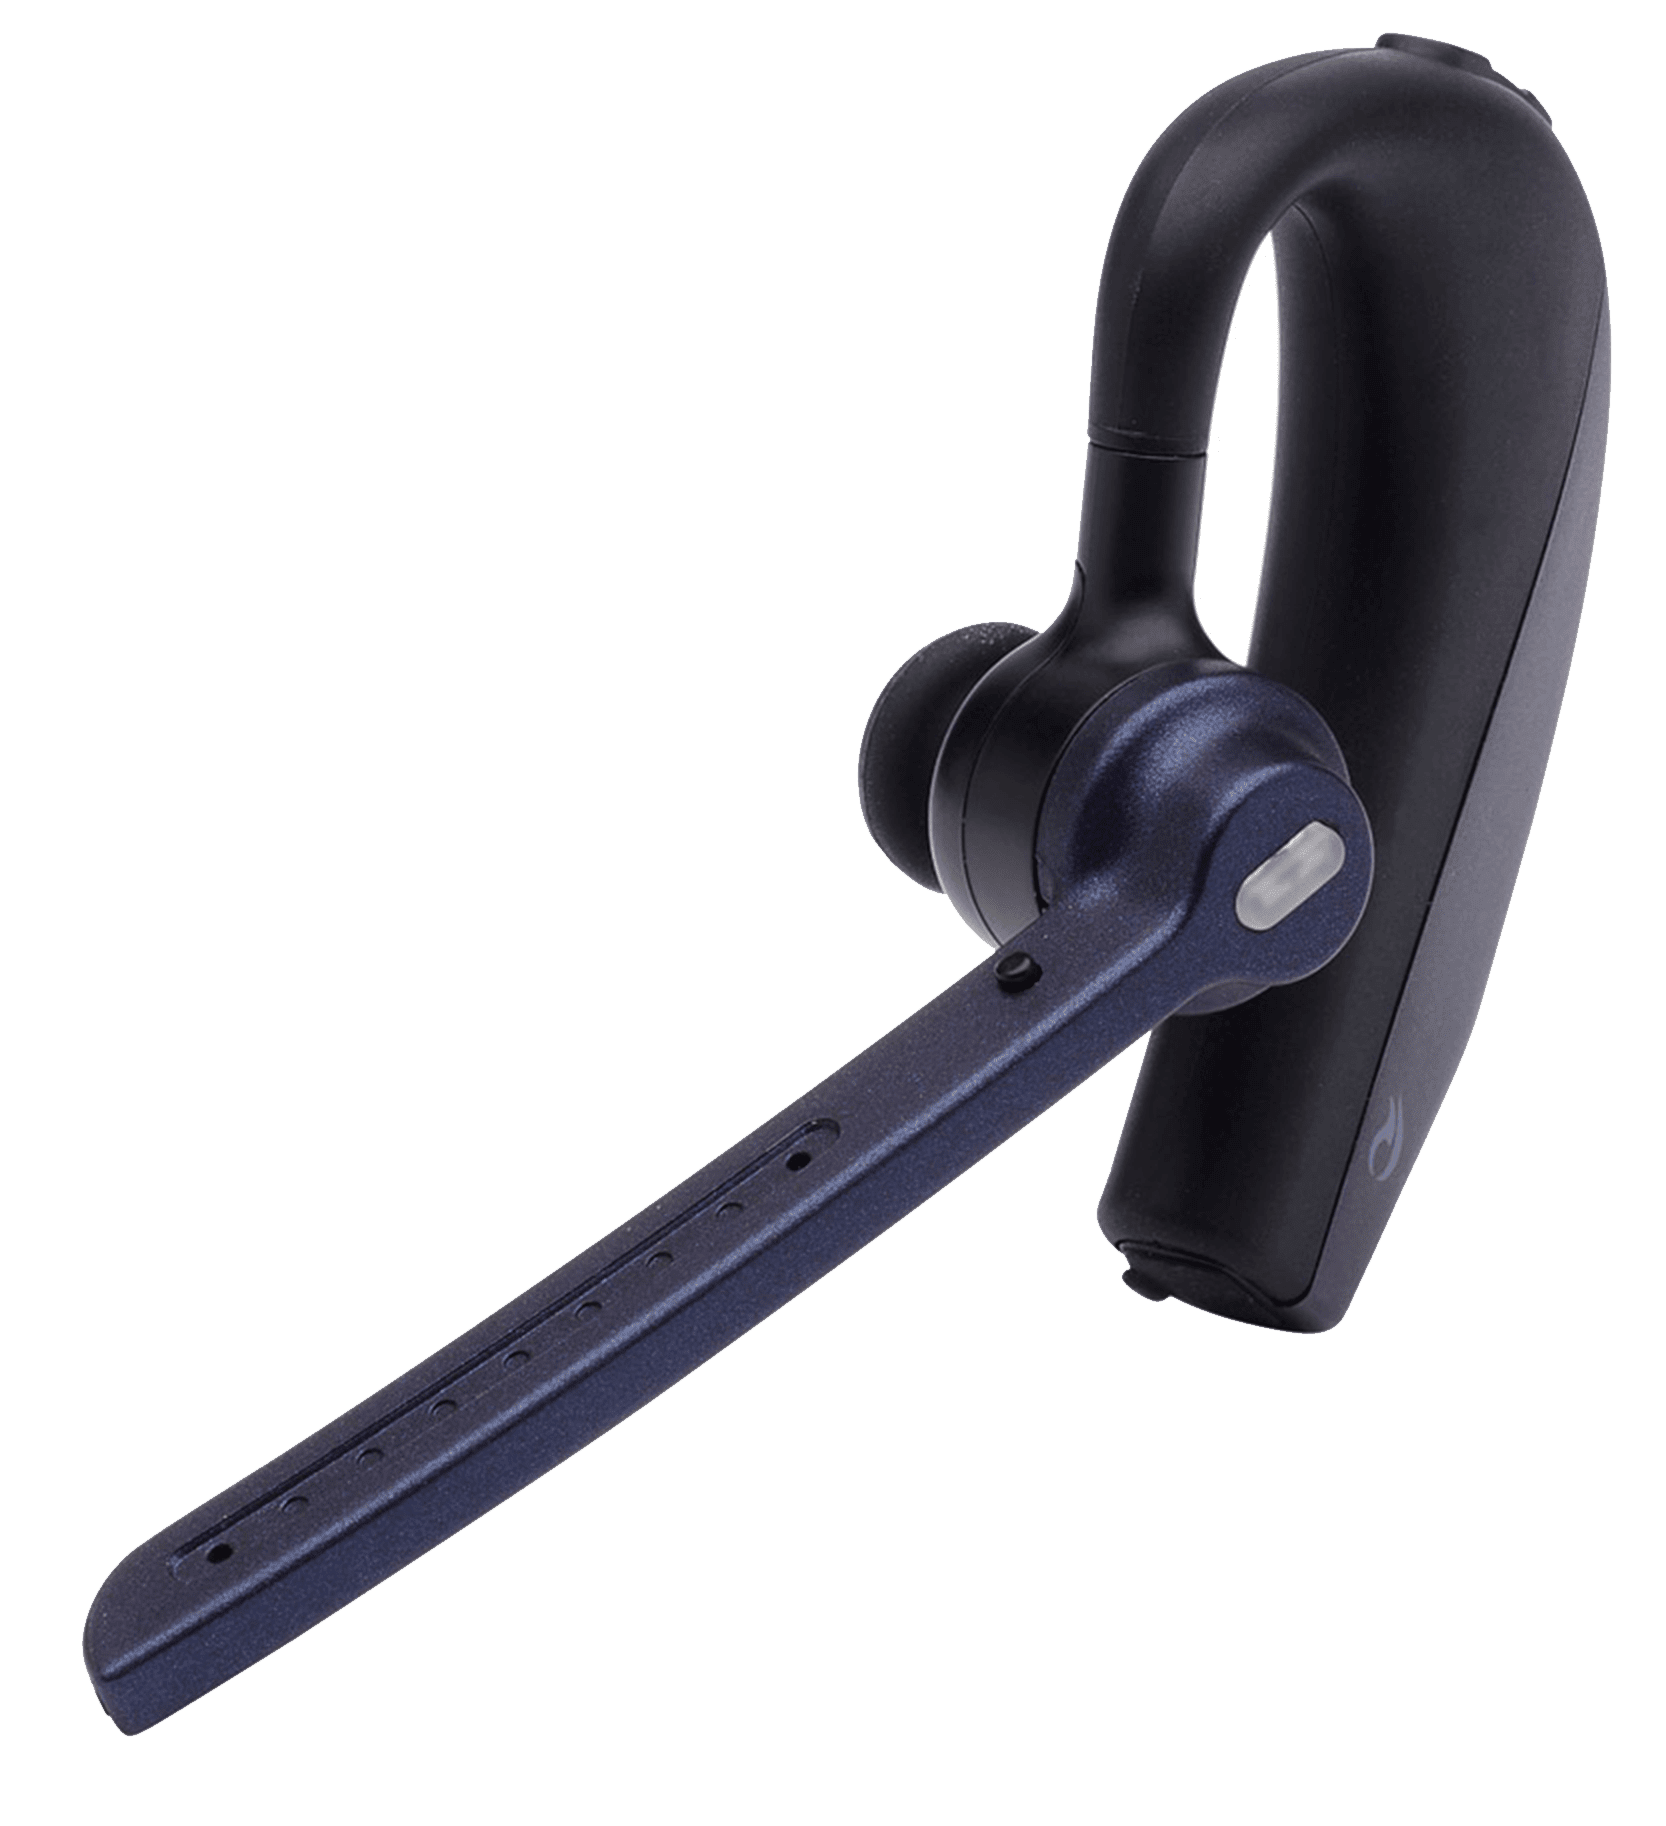 Auricular inalámbrico Bluetooth Dragon-II de Nuance